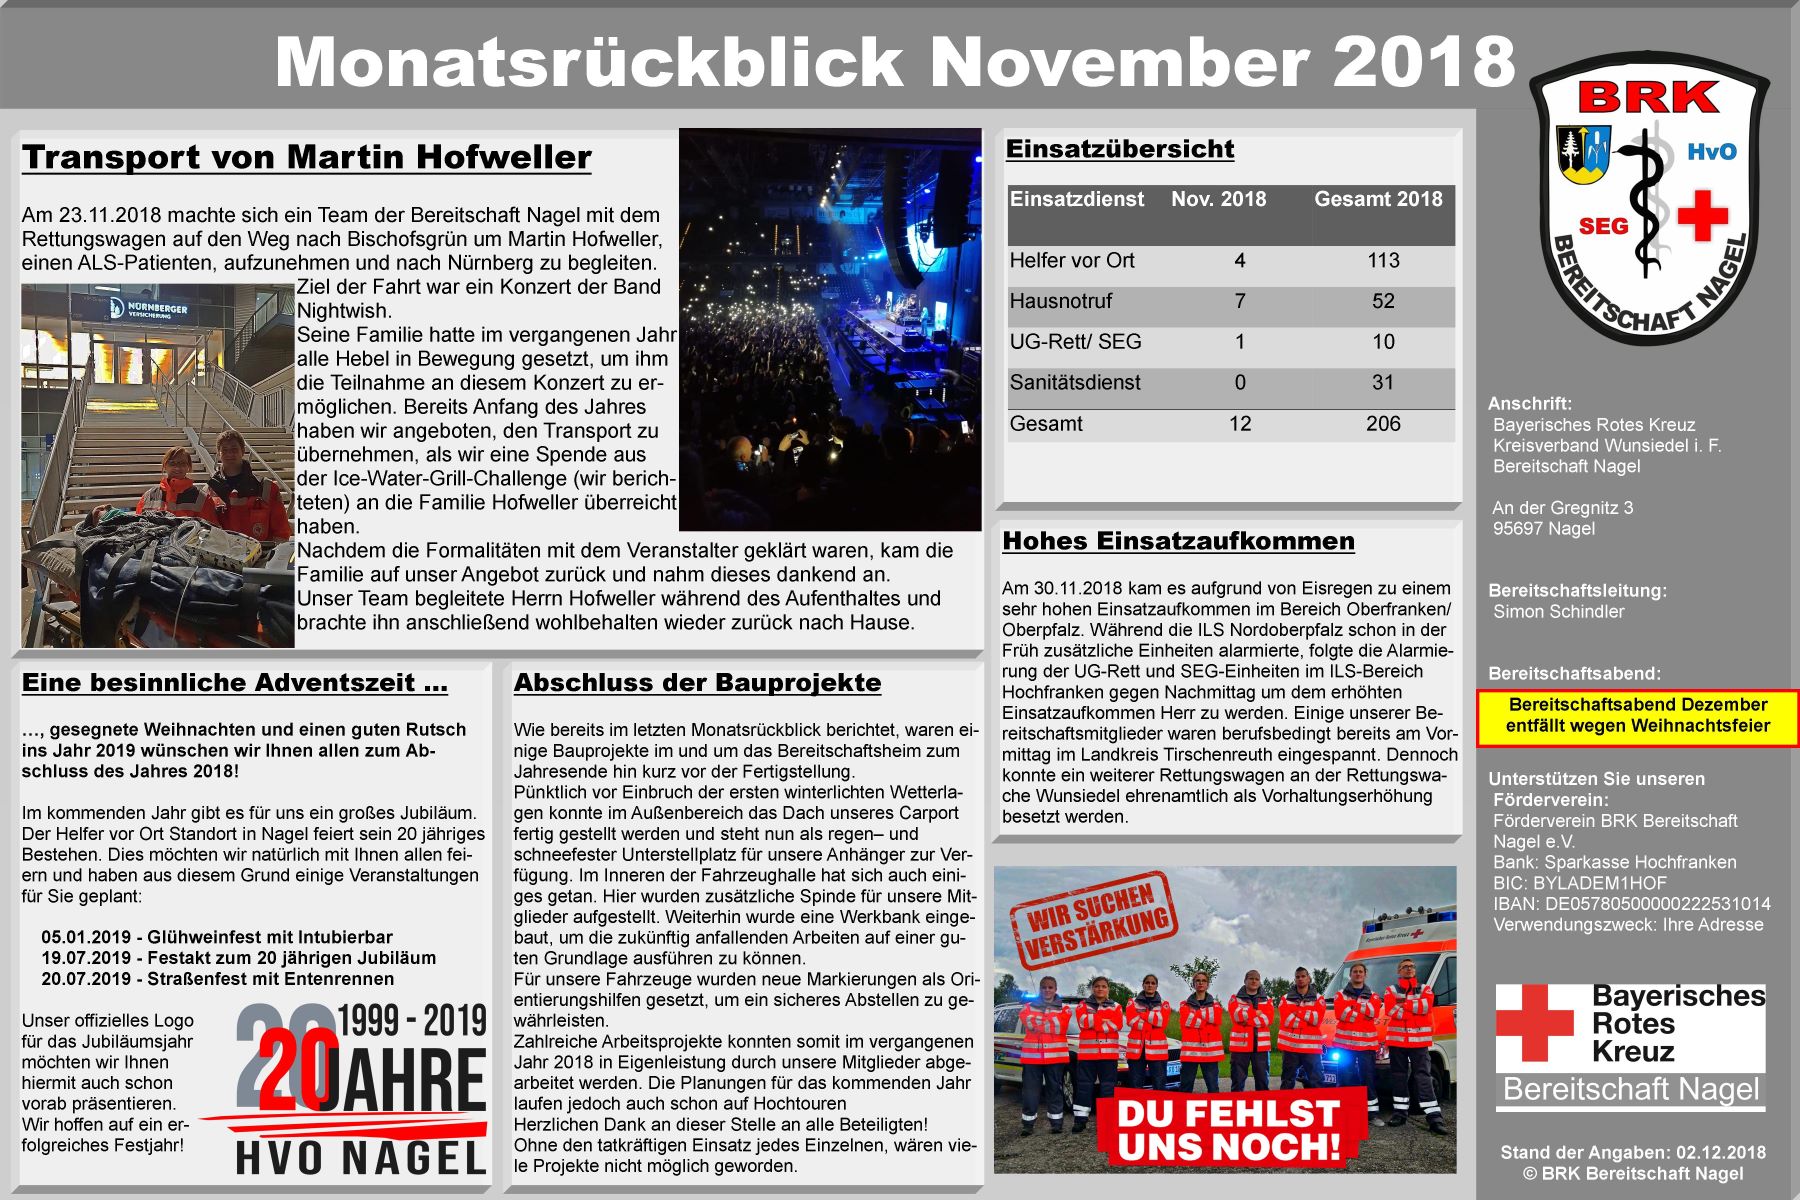 8_-_Plakat_Monatsrckblick_November_2018.jpg